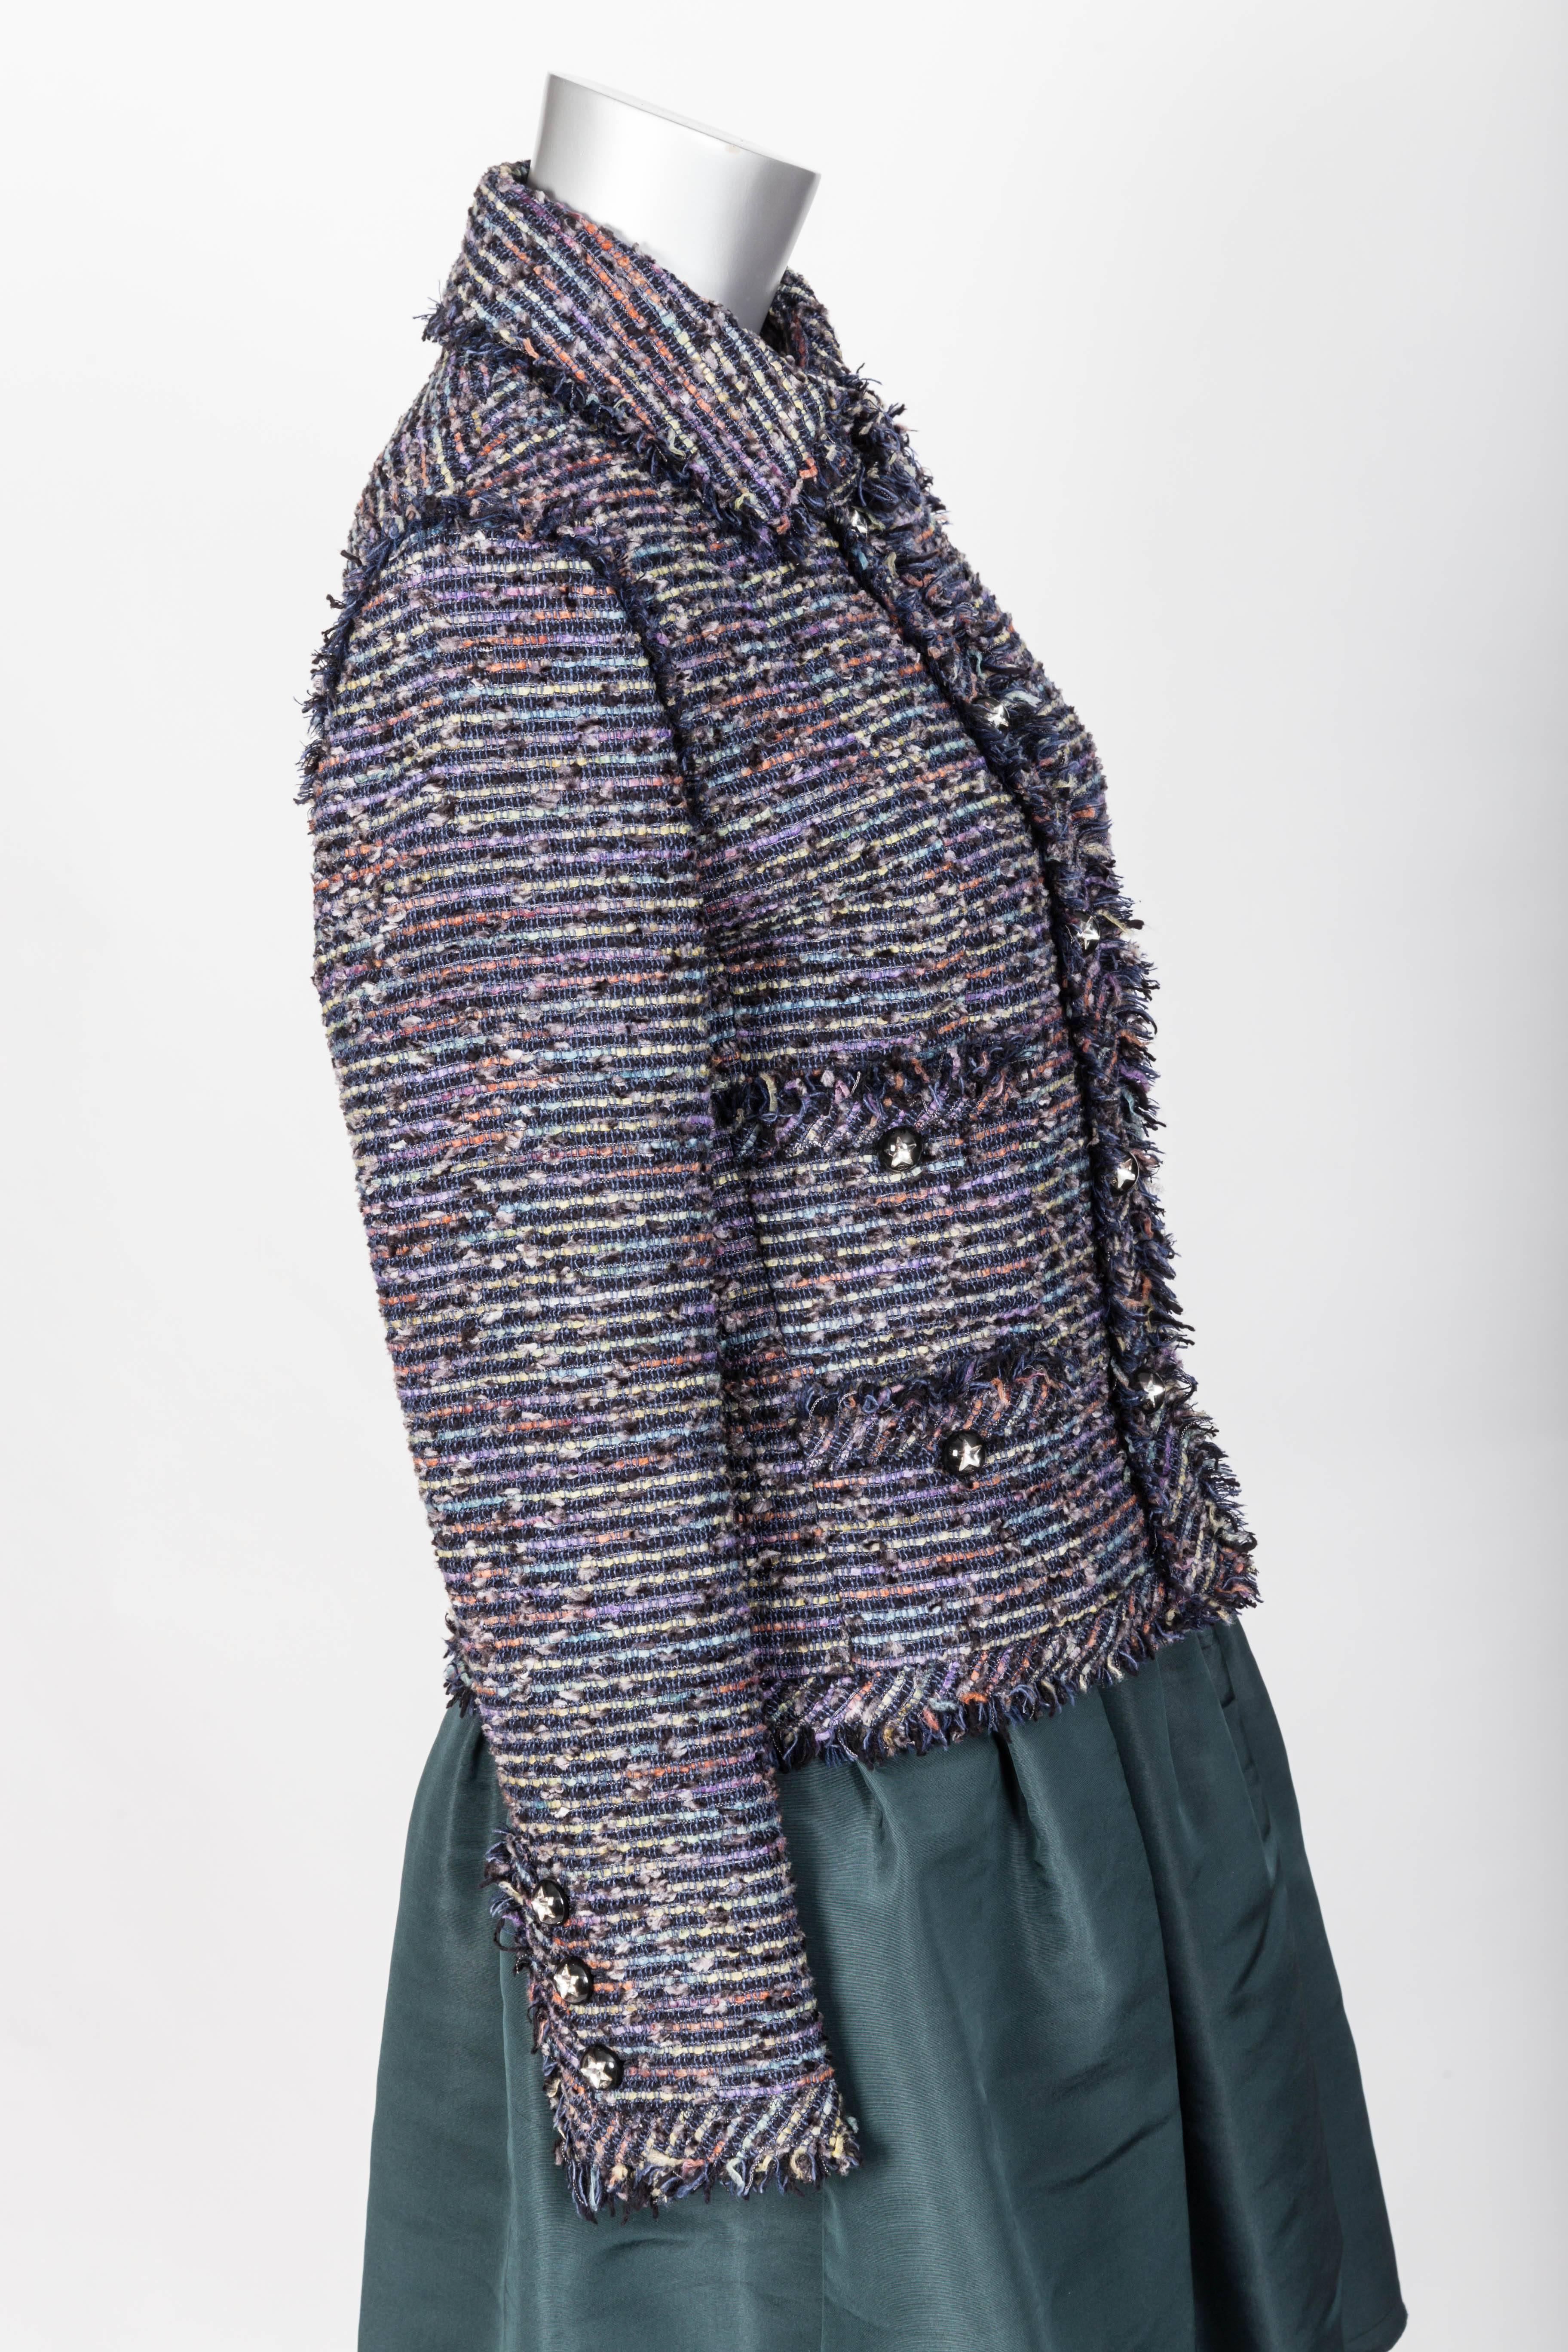 Women's or Men's Chanel Tweed Jacket with Fringe Trim FR 40 / US 8